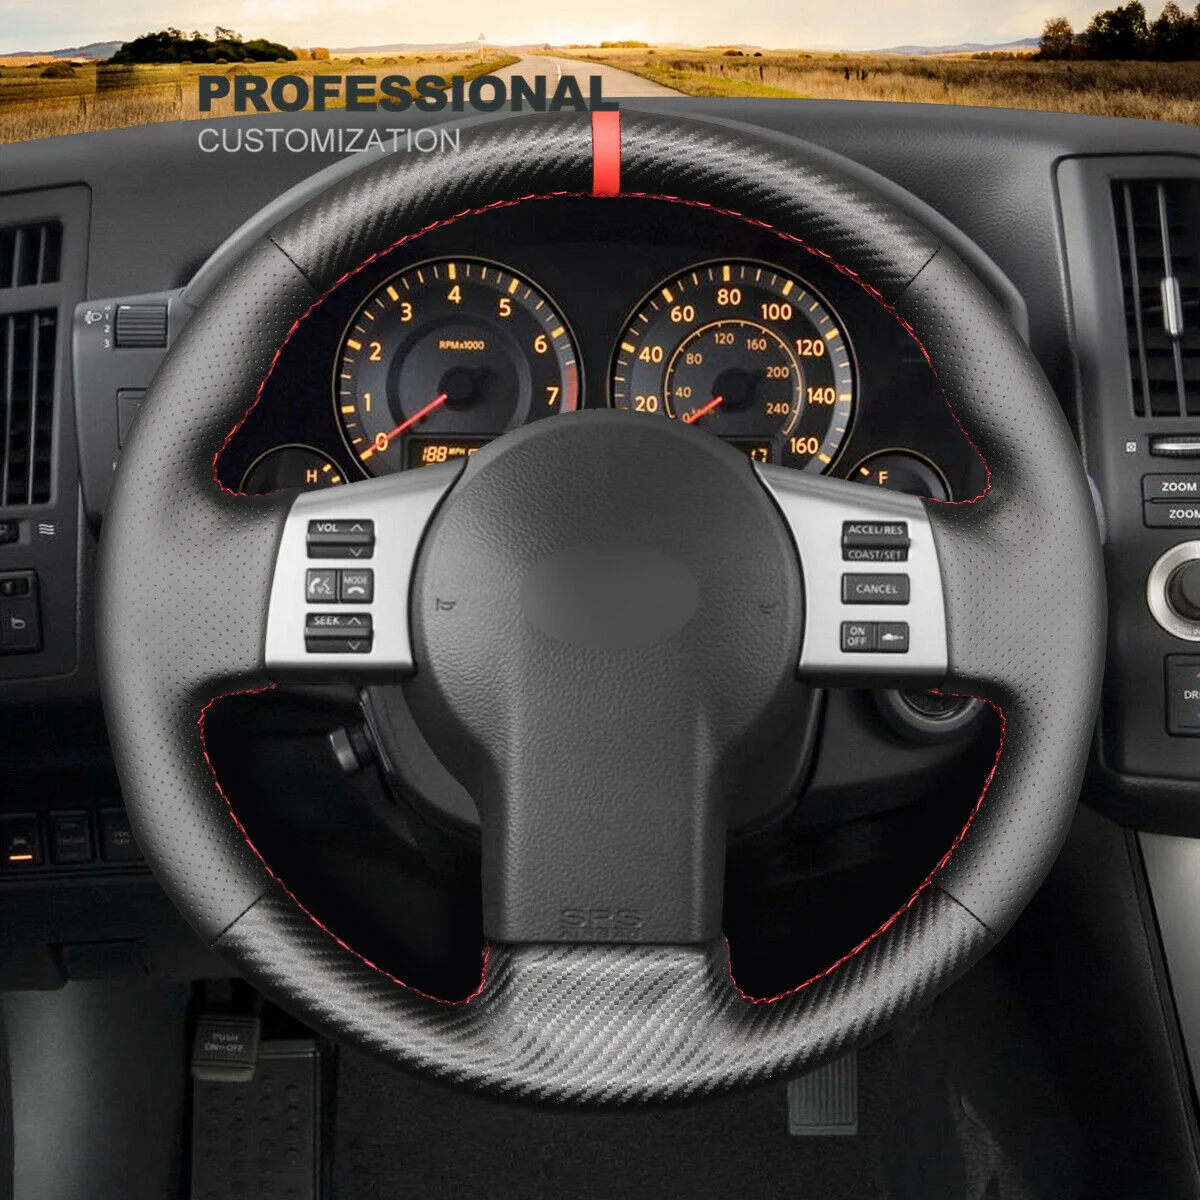 

Customized Non-slip Black Carbon Fiber Car Steering Wheel Cover Wrap For Infiniti FX FX35 FX45 2003-2008 Interior Accessories